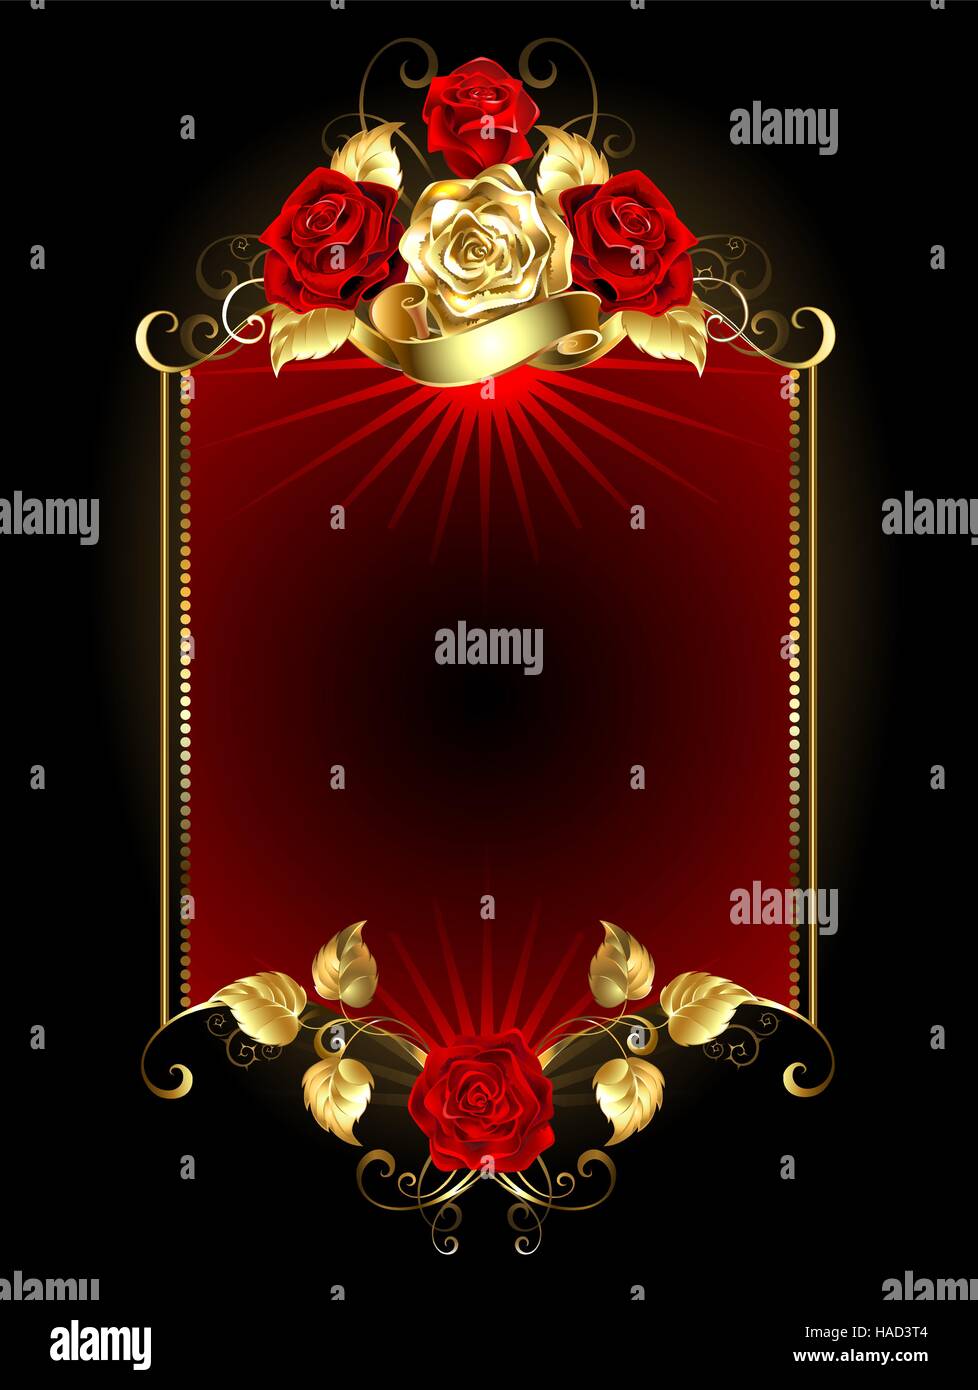 rote Fahne mit gold und rote Rosen auf einem dunklen Hintergrund. Stock Vektor